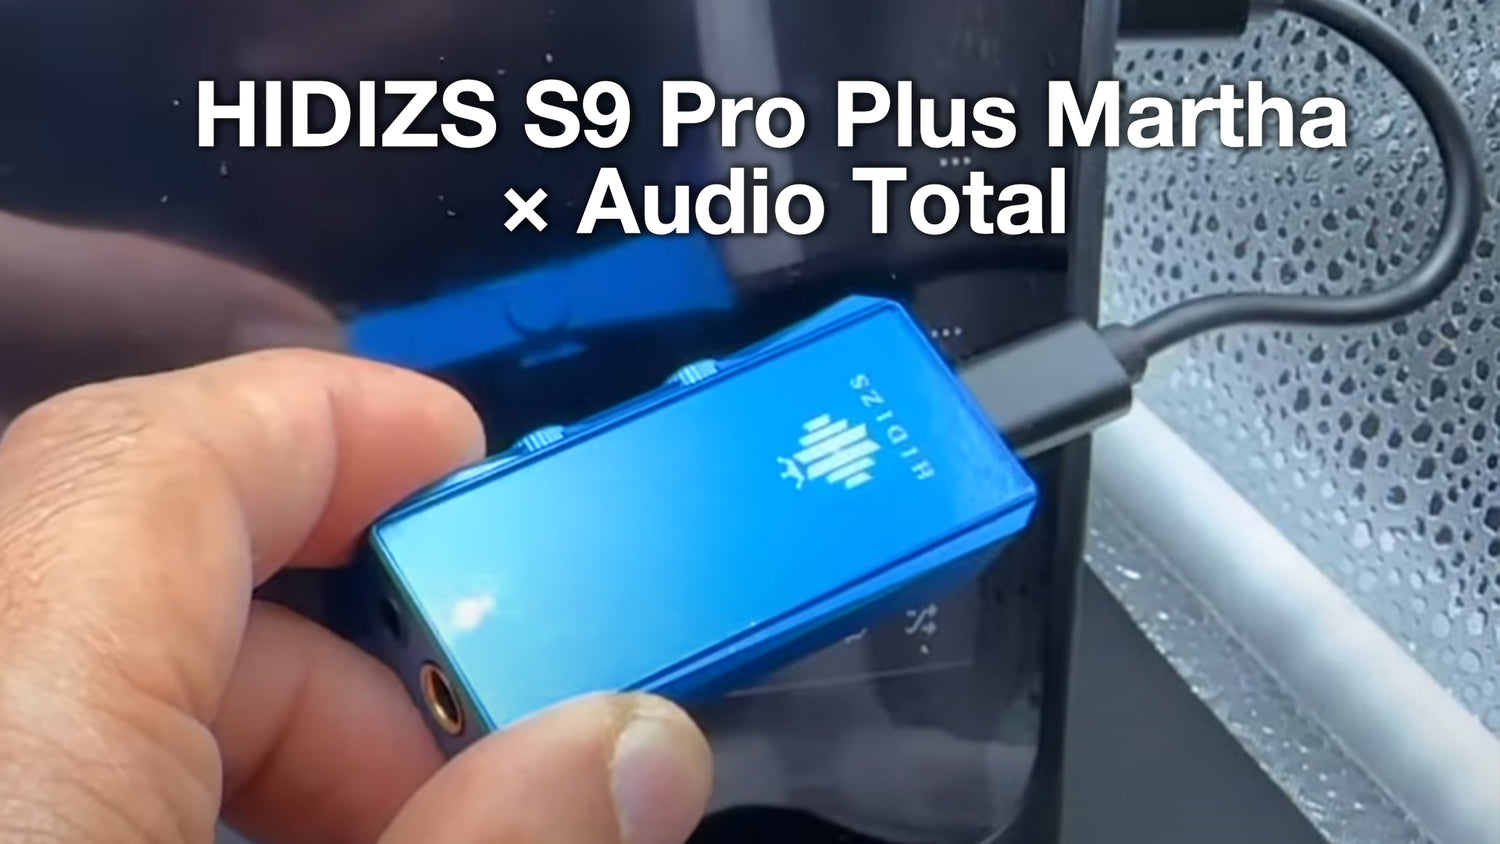 HIDIZS S9 Pro Plus Martha Review - Audio Total